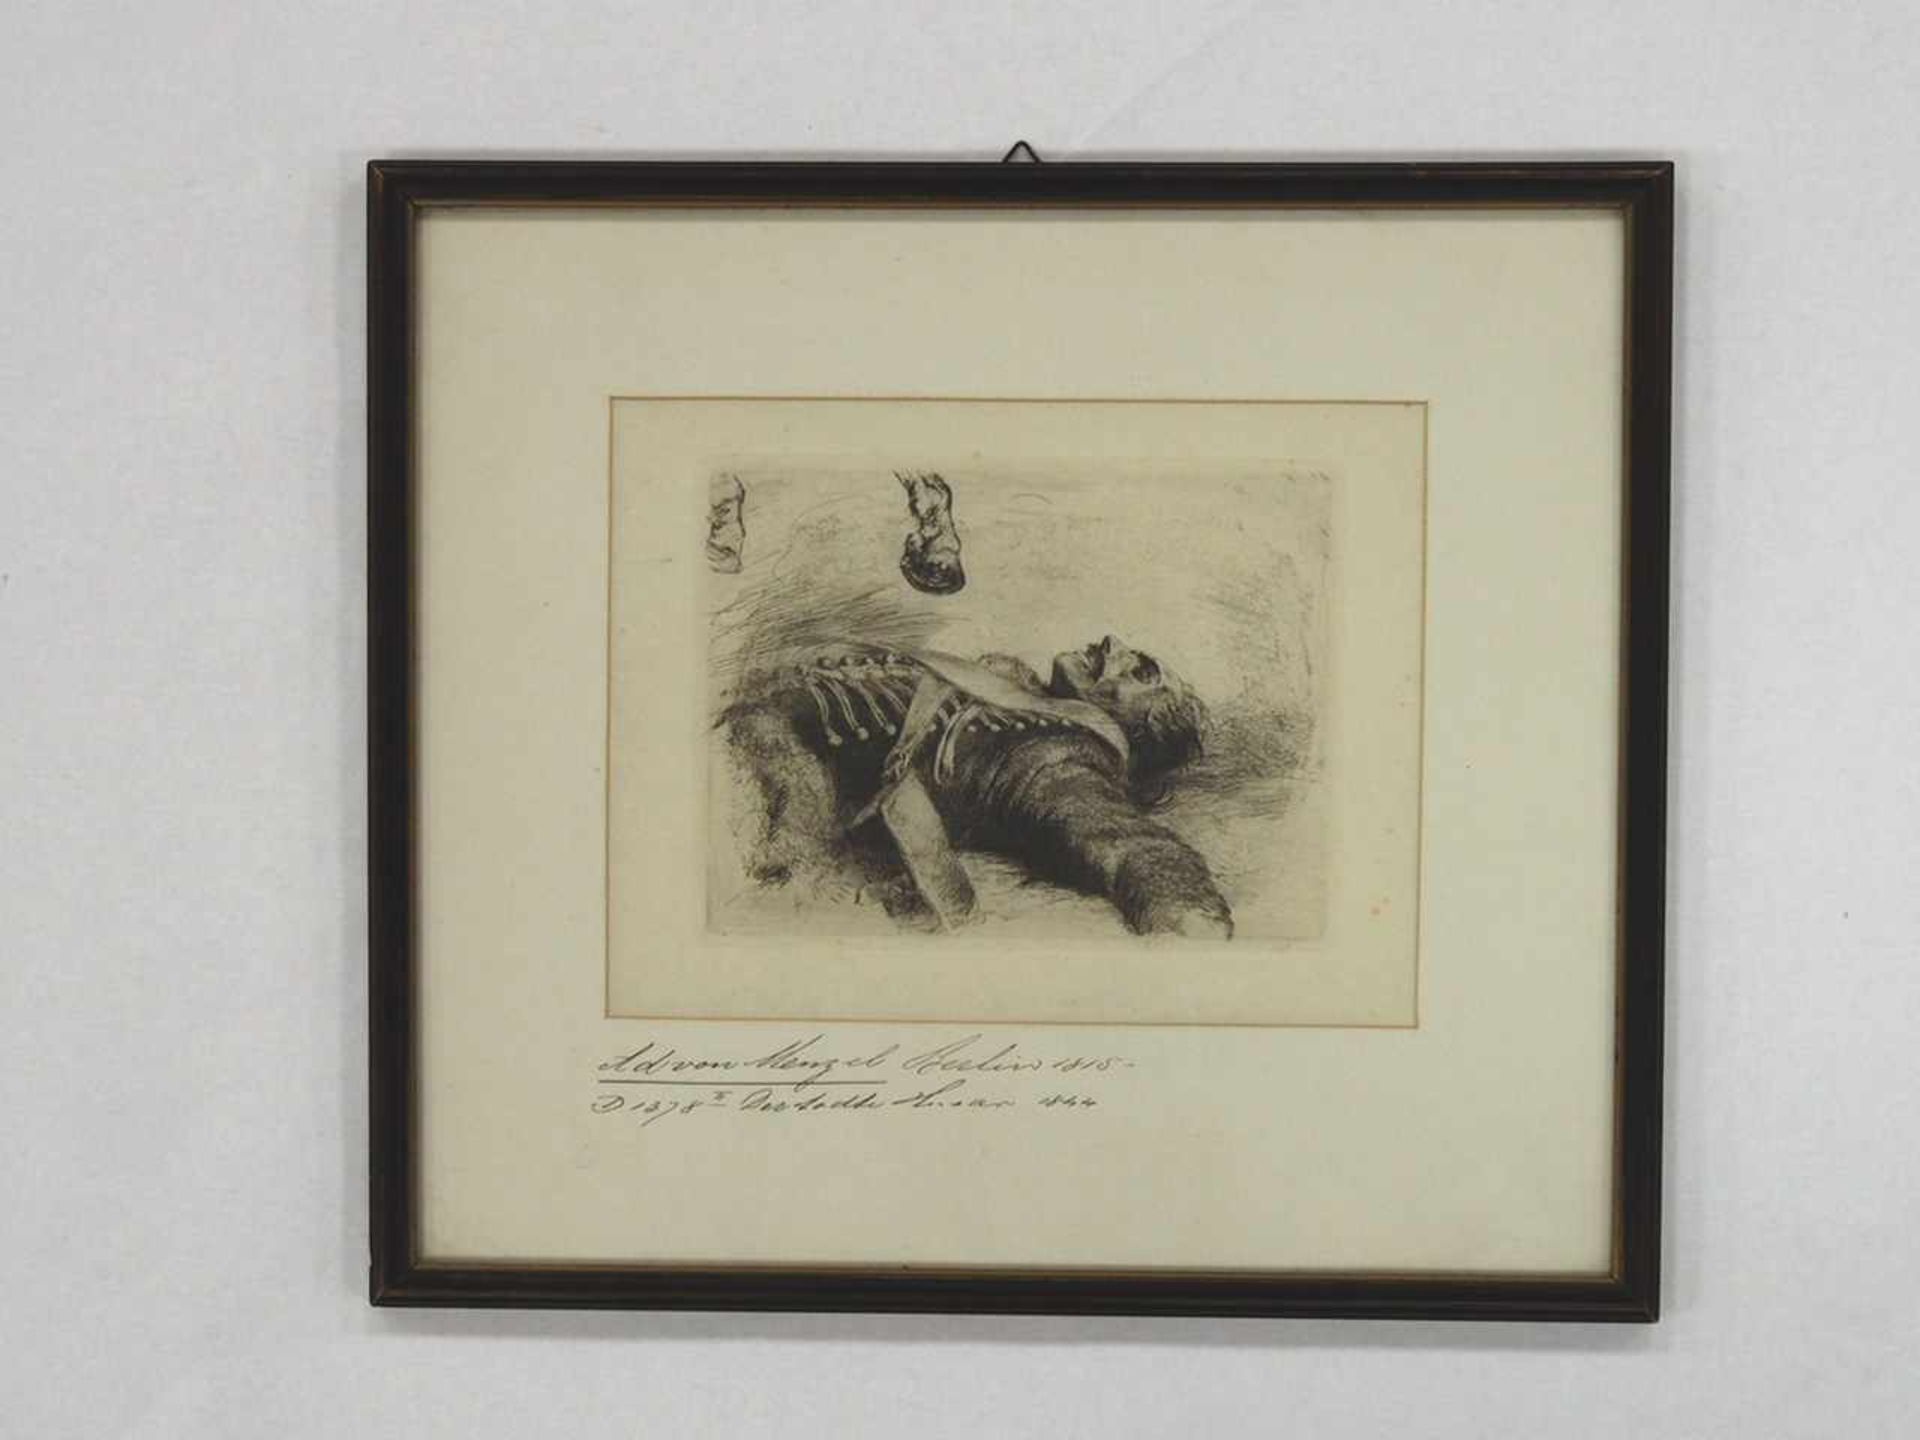 MENZEL, Adolf von1815-1905Der tote HusarRadierung, 1844, 15,5 x 20 cm, gerahmt unter Glas und - Image 2 of 2